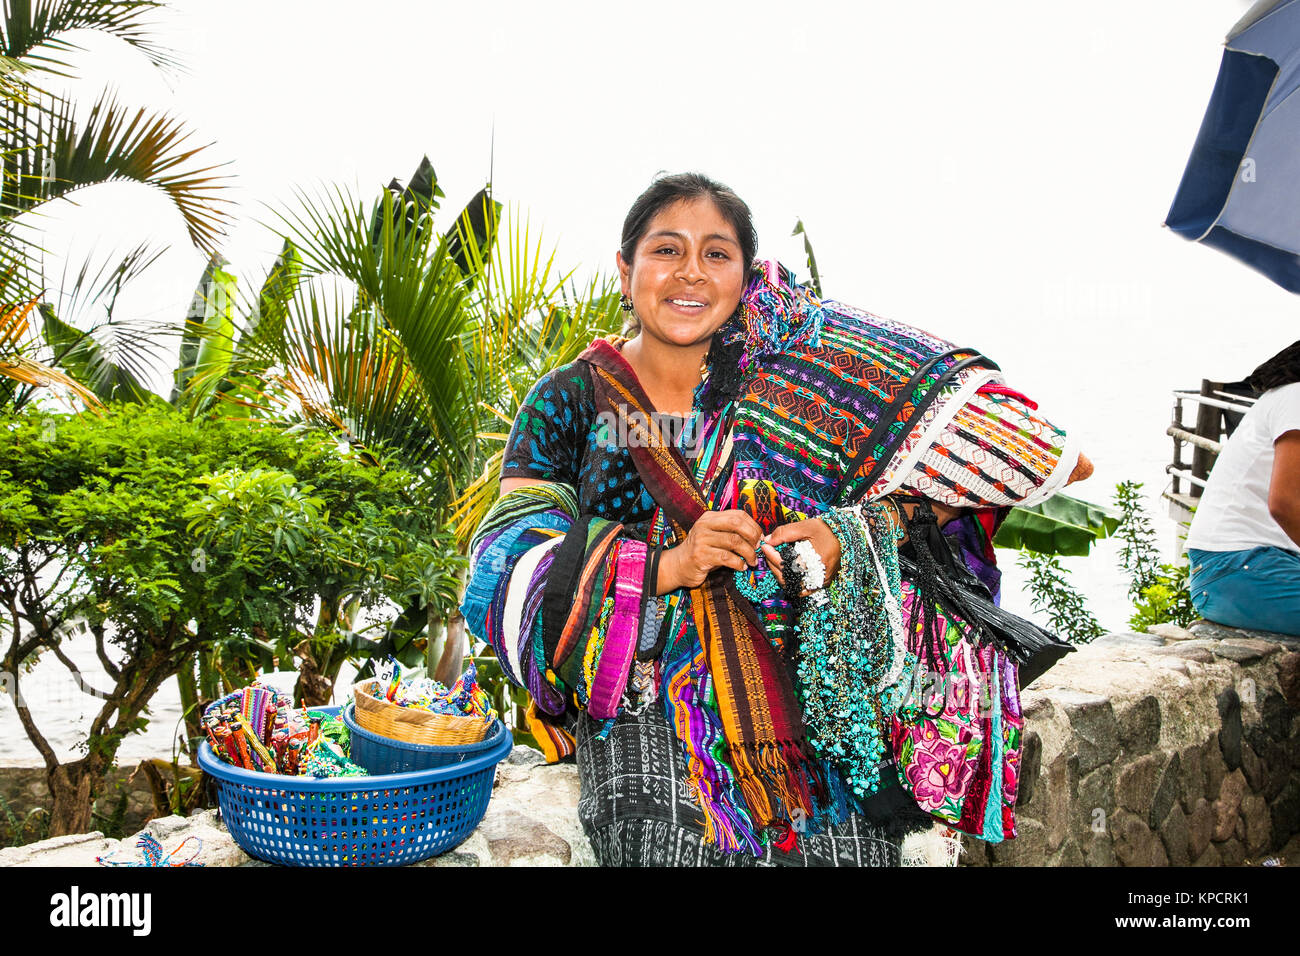 PANAJACHEL, GUATEMALA - Dec 24, 2015 :: Guatamalian Frau salling Traditionelle bunte Gewebe an der Straße Markt in Panajachel, am 24.Dezember 2015, Gua Stockfoto